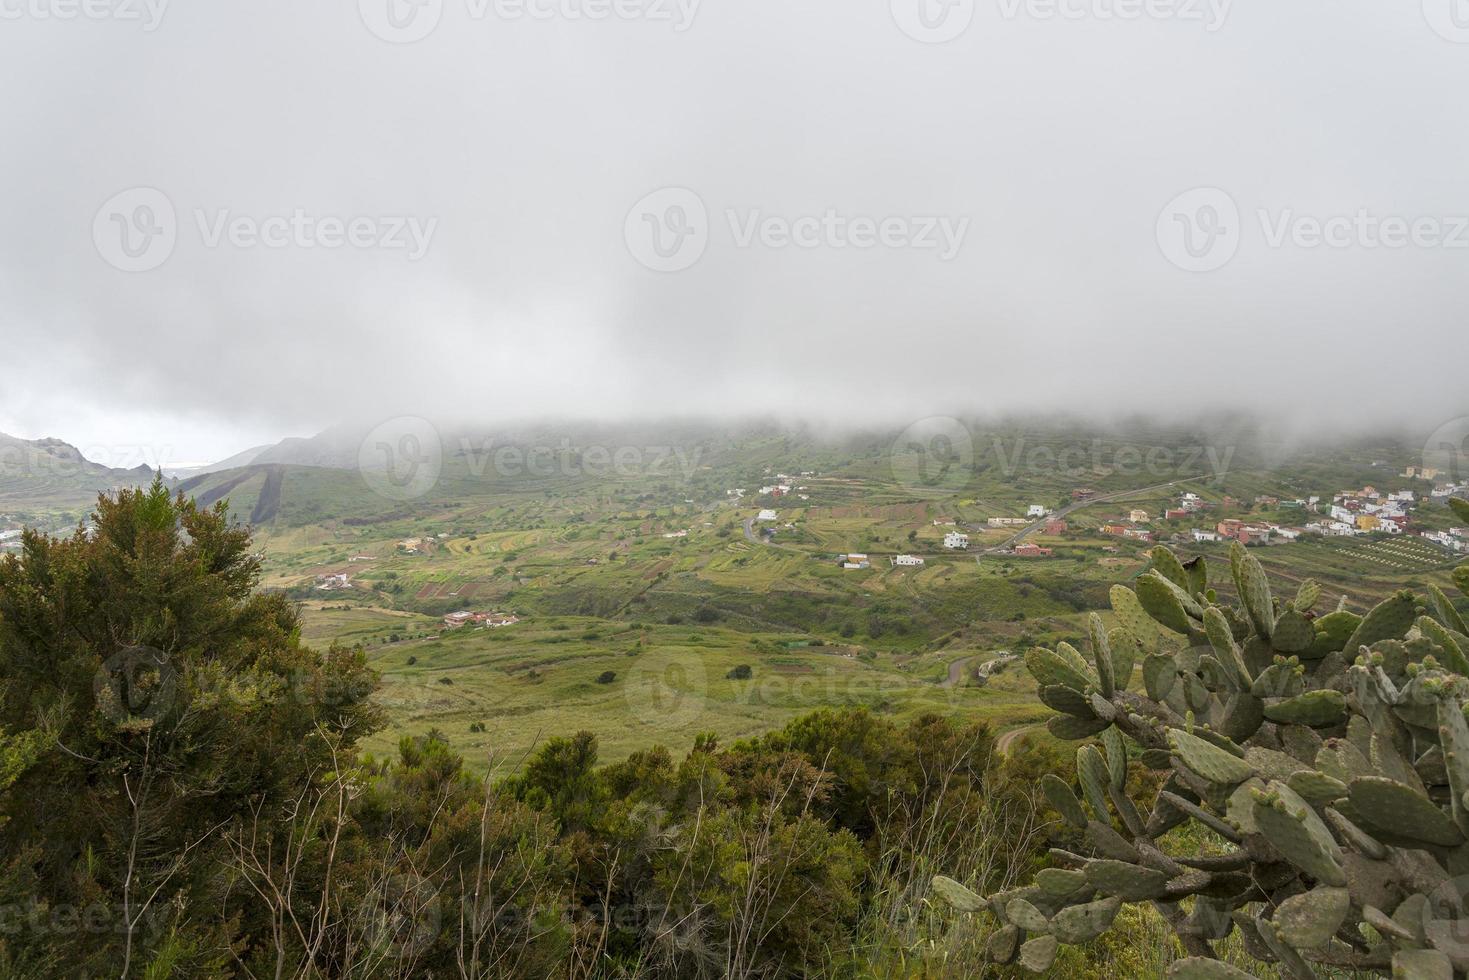 vila sob as nuvens, vista de cima da montanha foto